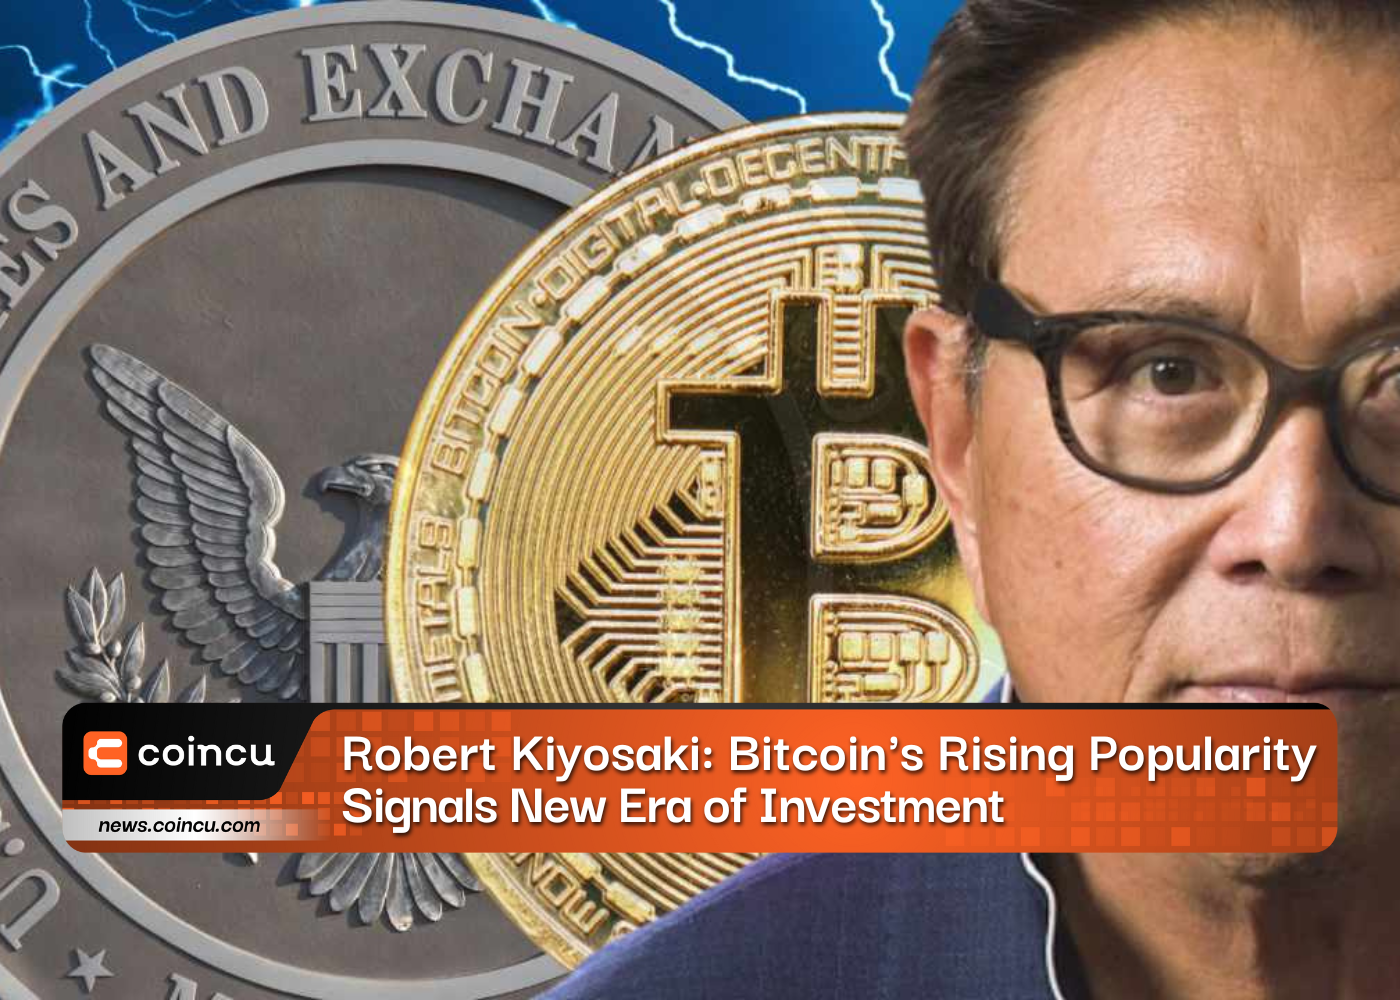 Bitcoins von Robert Kiyosaki werden immer beliebter